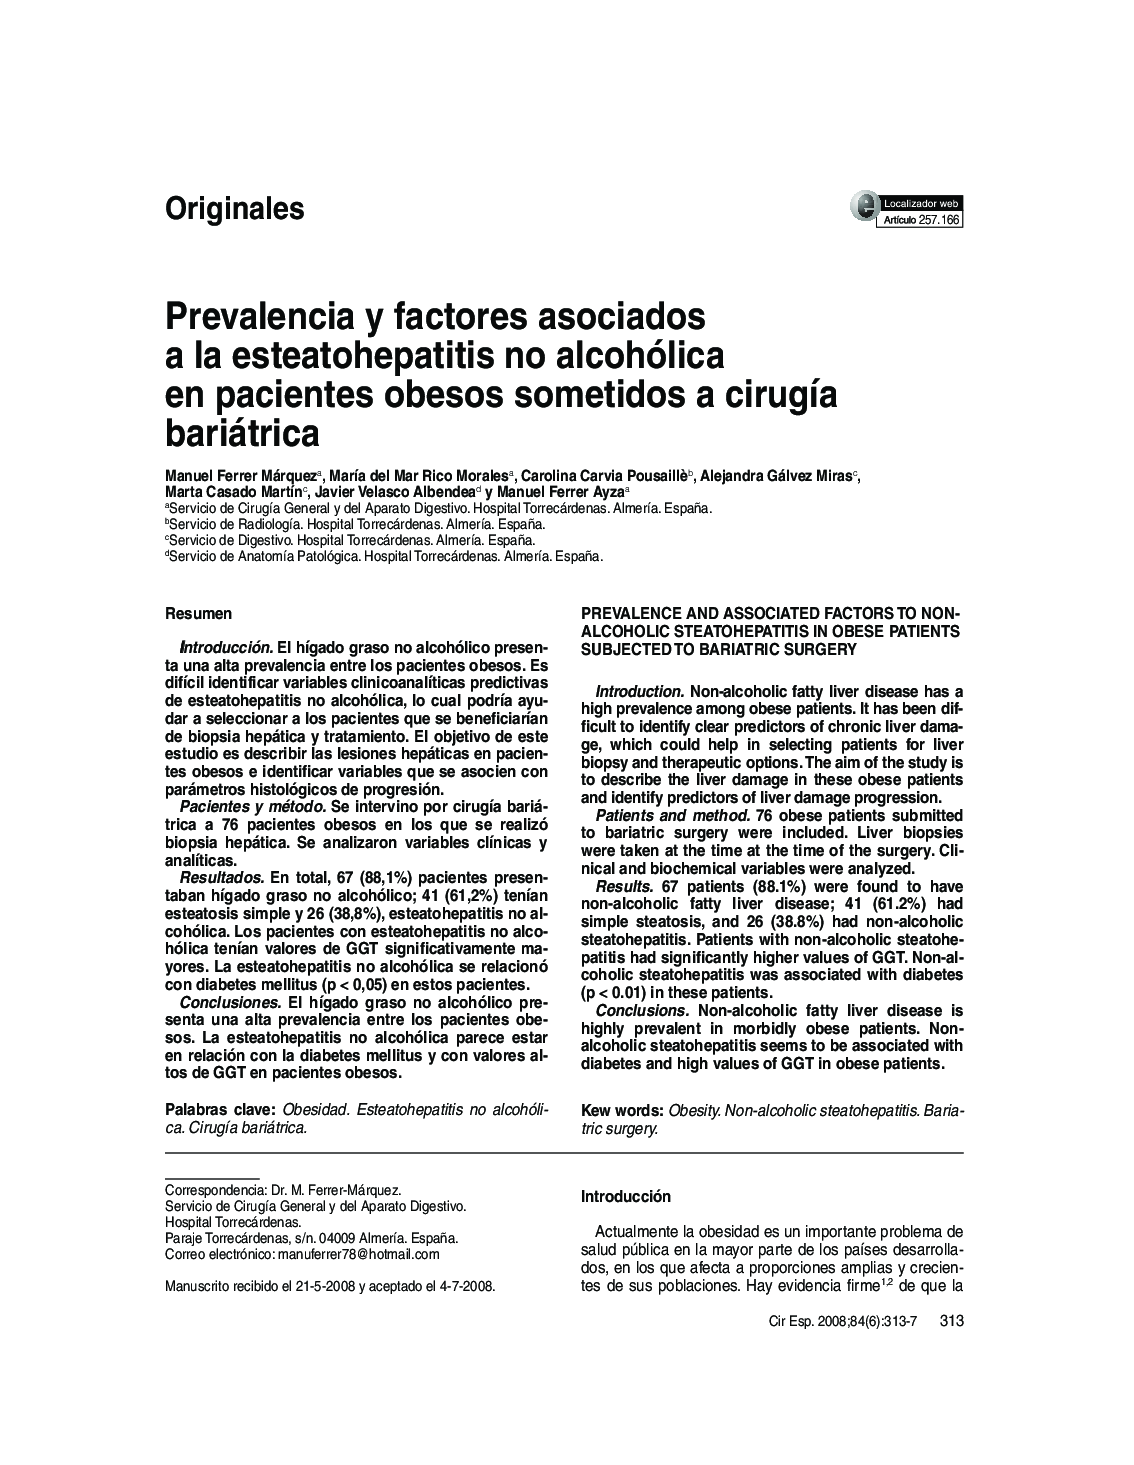 Prevalencia y factores asociados a la esteatohepatitis no alcohólica en pacientes obesos sometidos a cirugía bariátrica